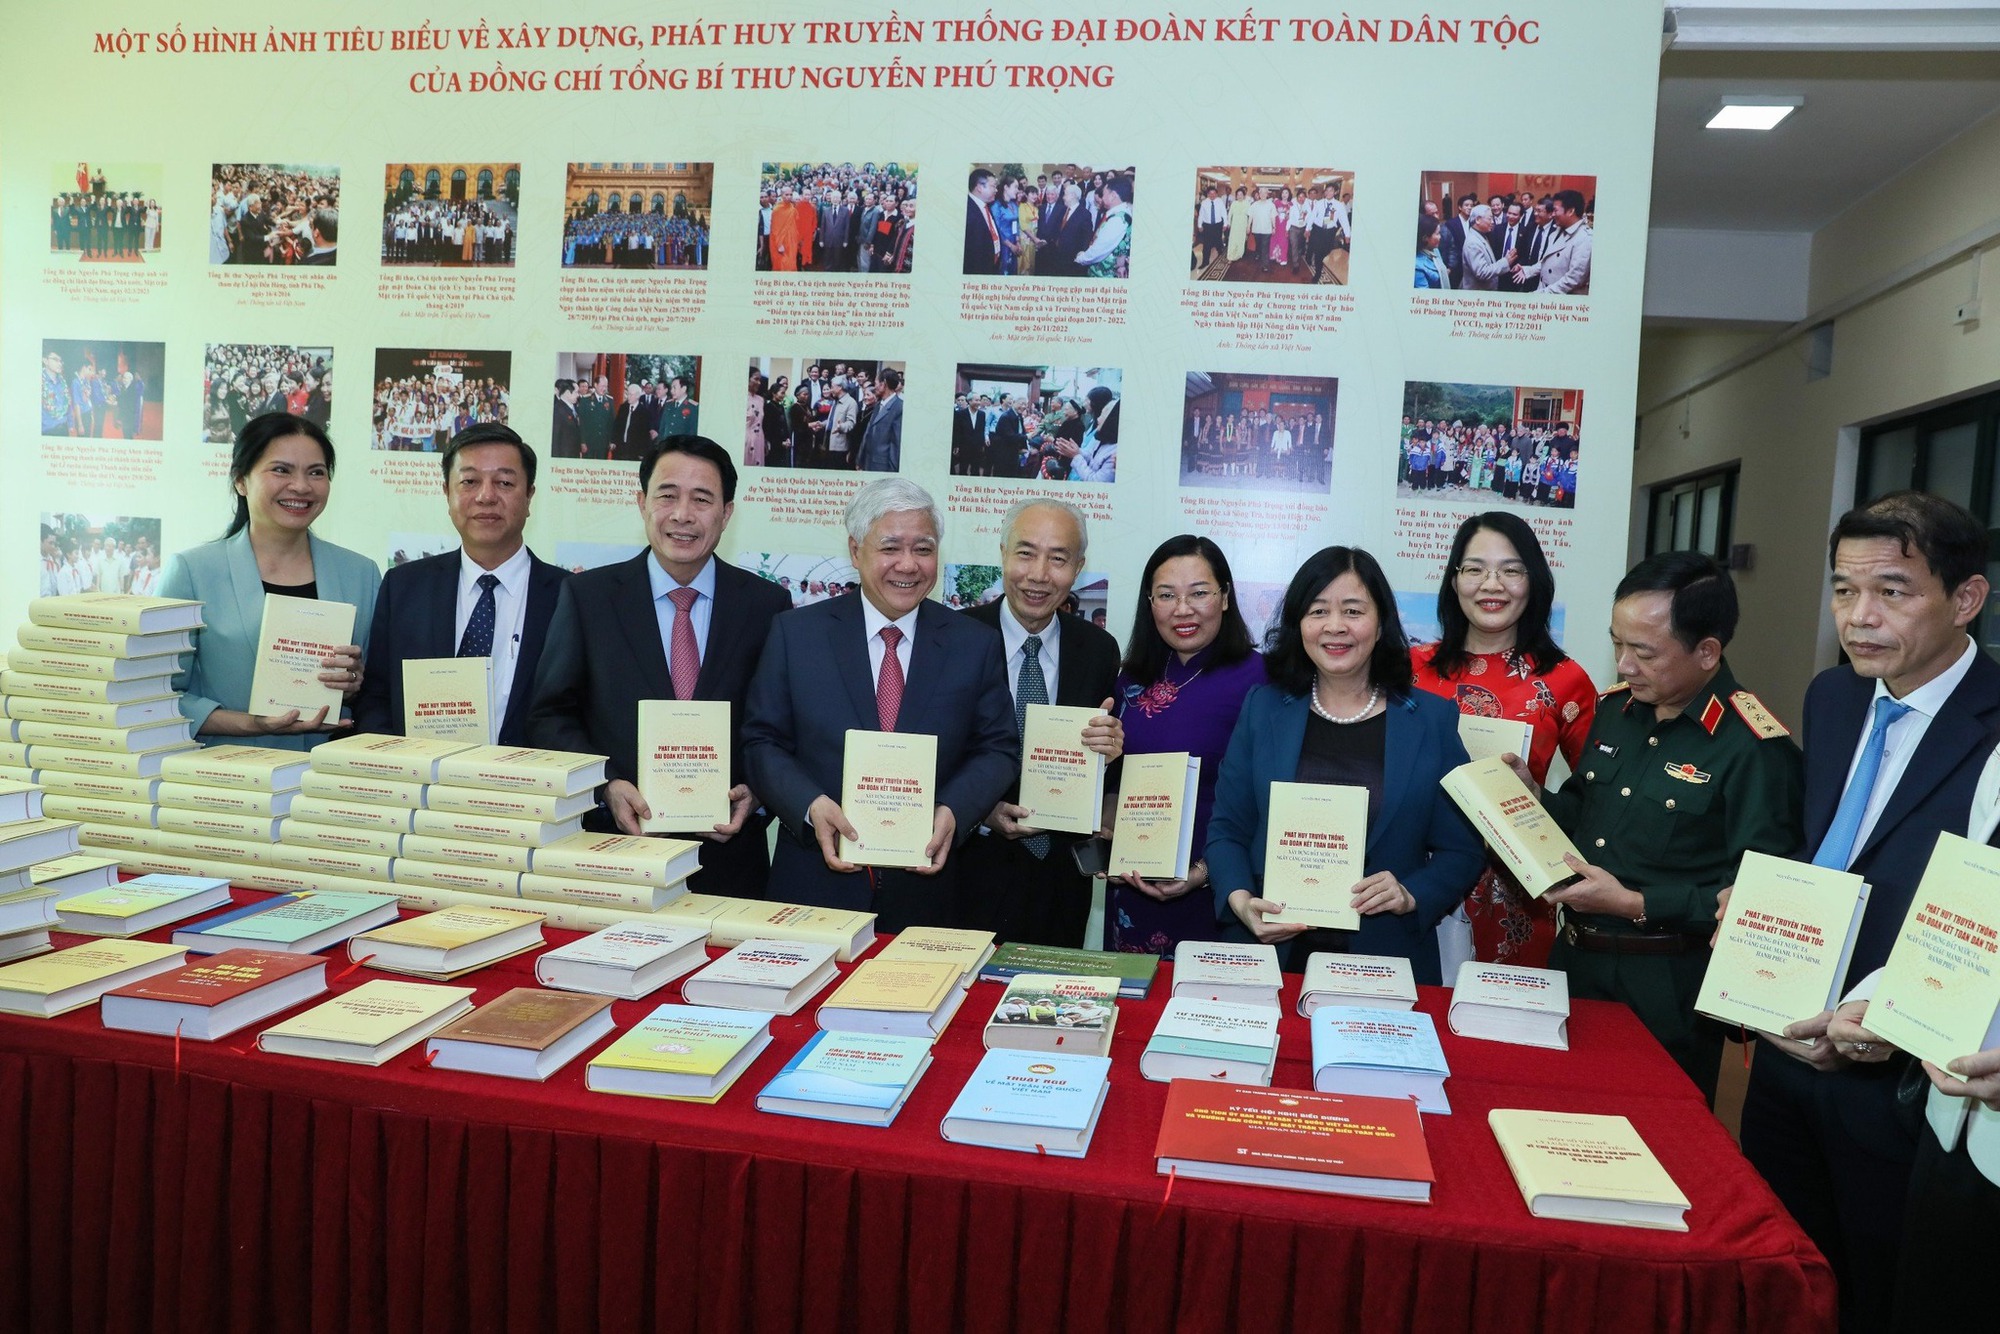 Ra mắt cuốn sách của Tổng Bí thư Nguyễn Phú Trọng về truyền thống đại đoàn kết toàn dân tộc​ - Ảnh 5.